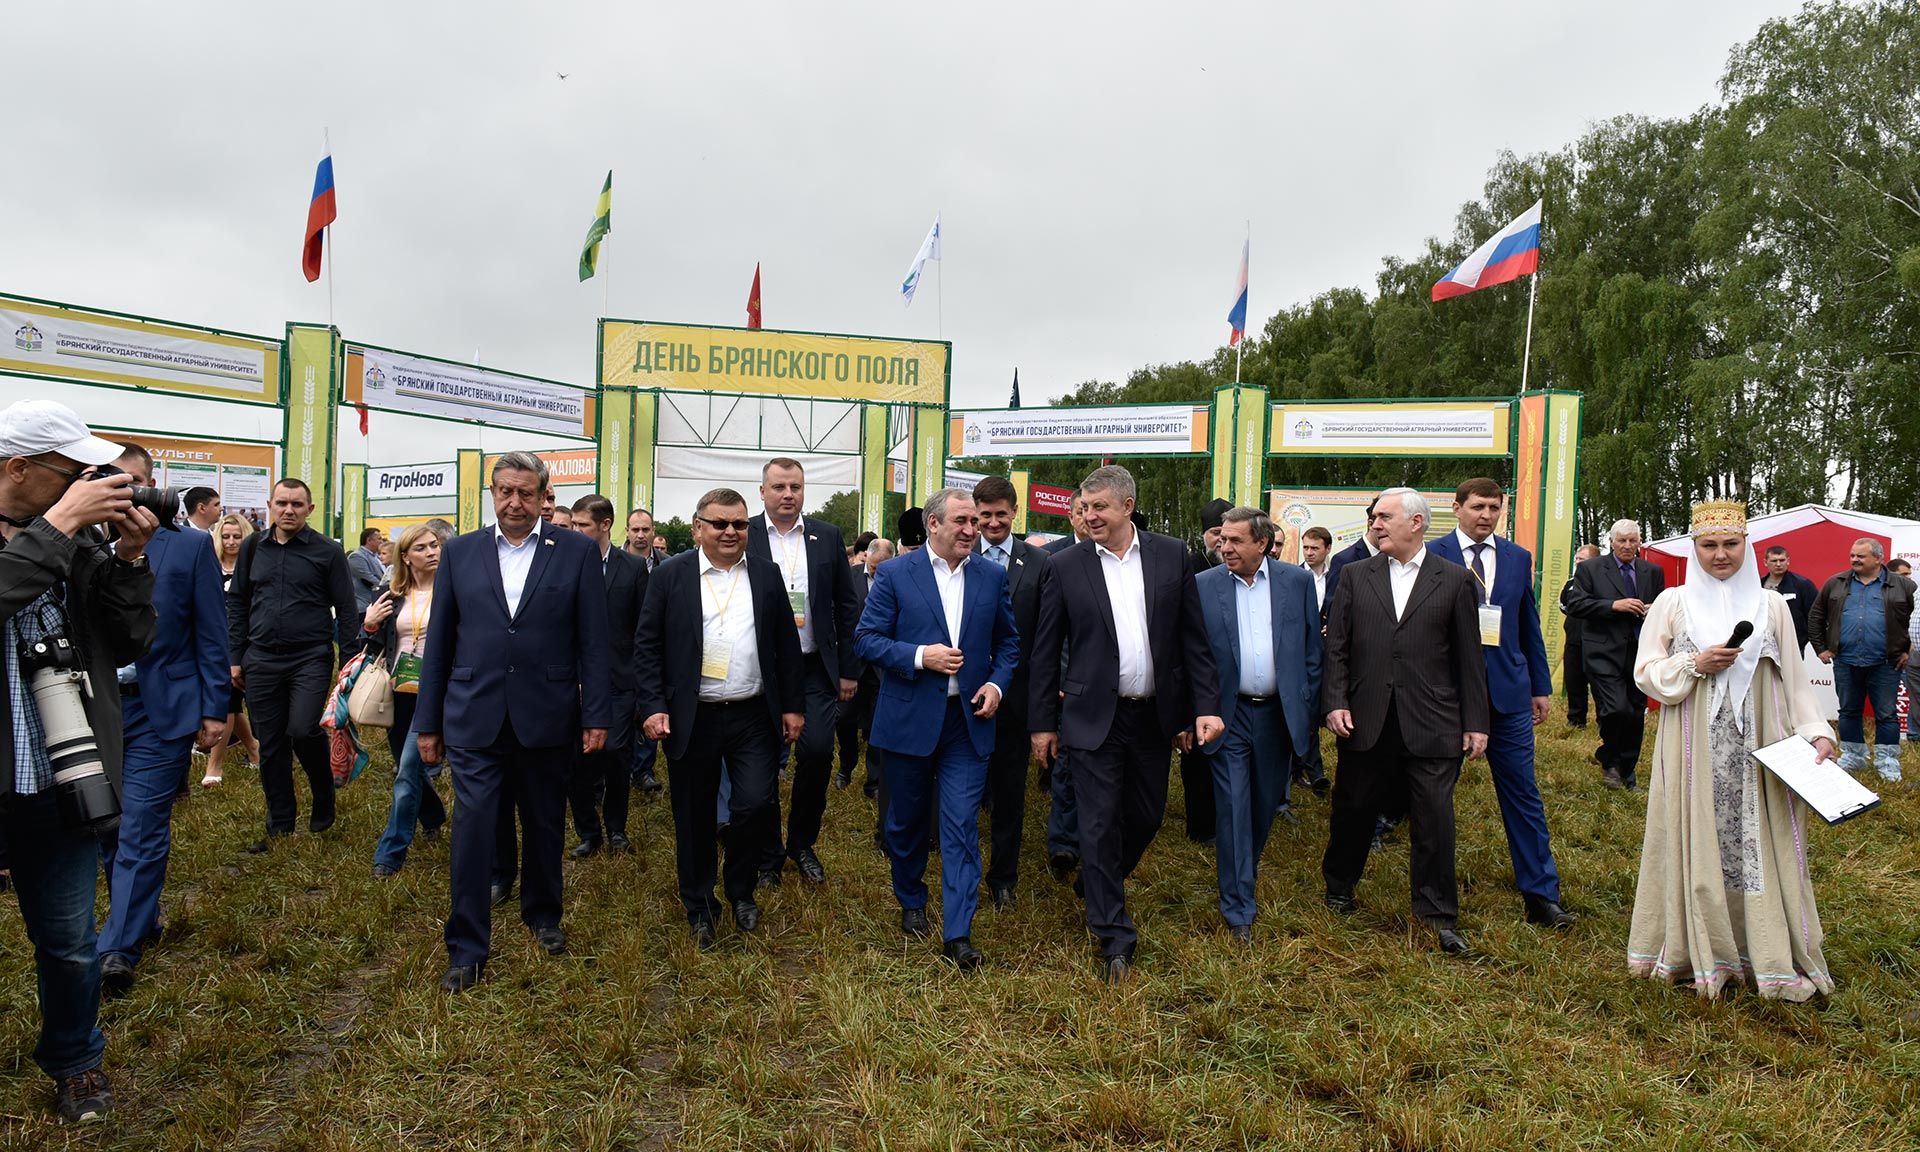 В Брянской области открылась Межрегиональная агропромышленная выставка-демонстрация «День брянского поля-2017»